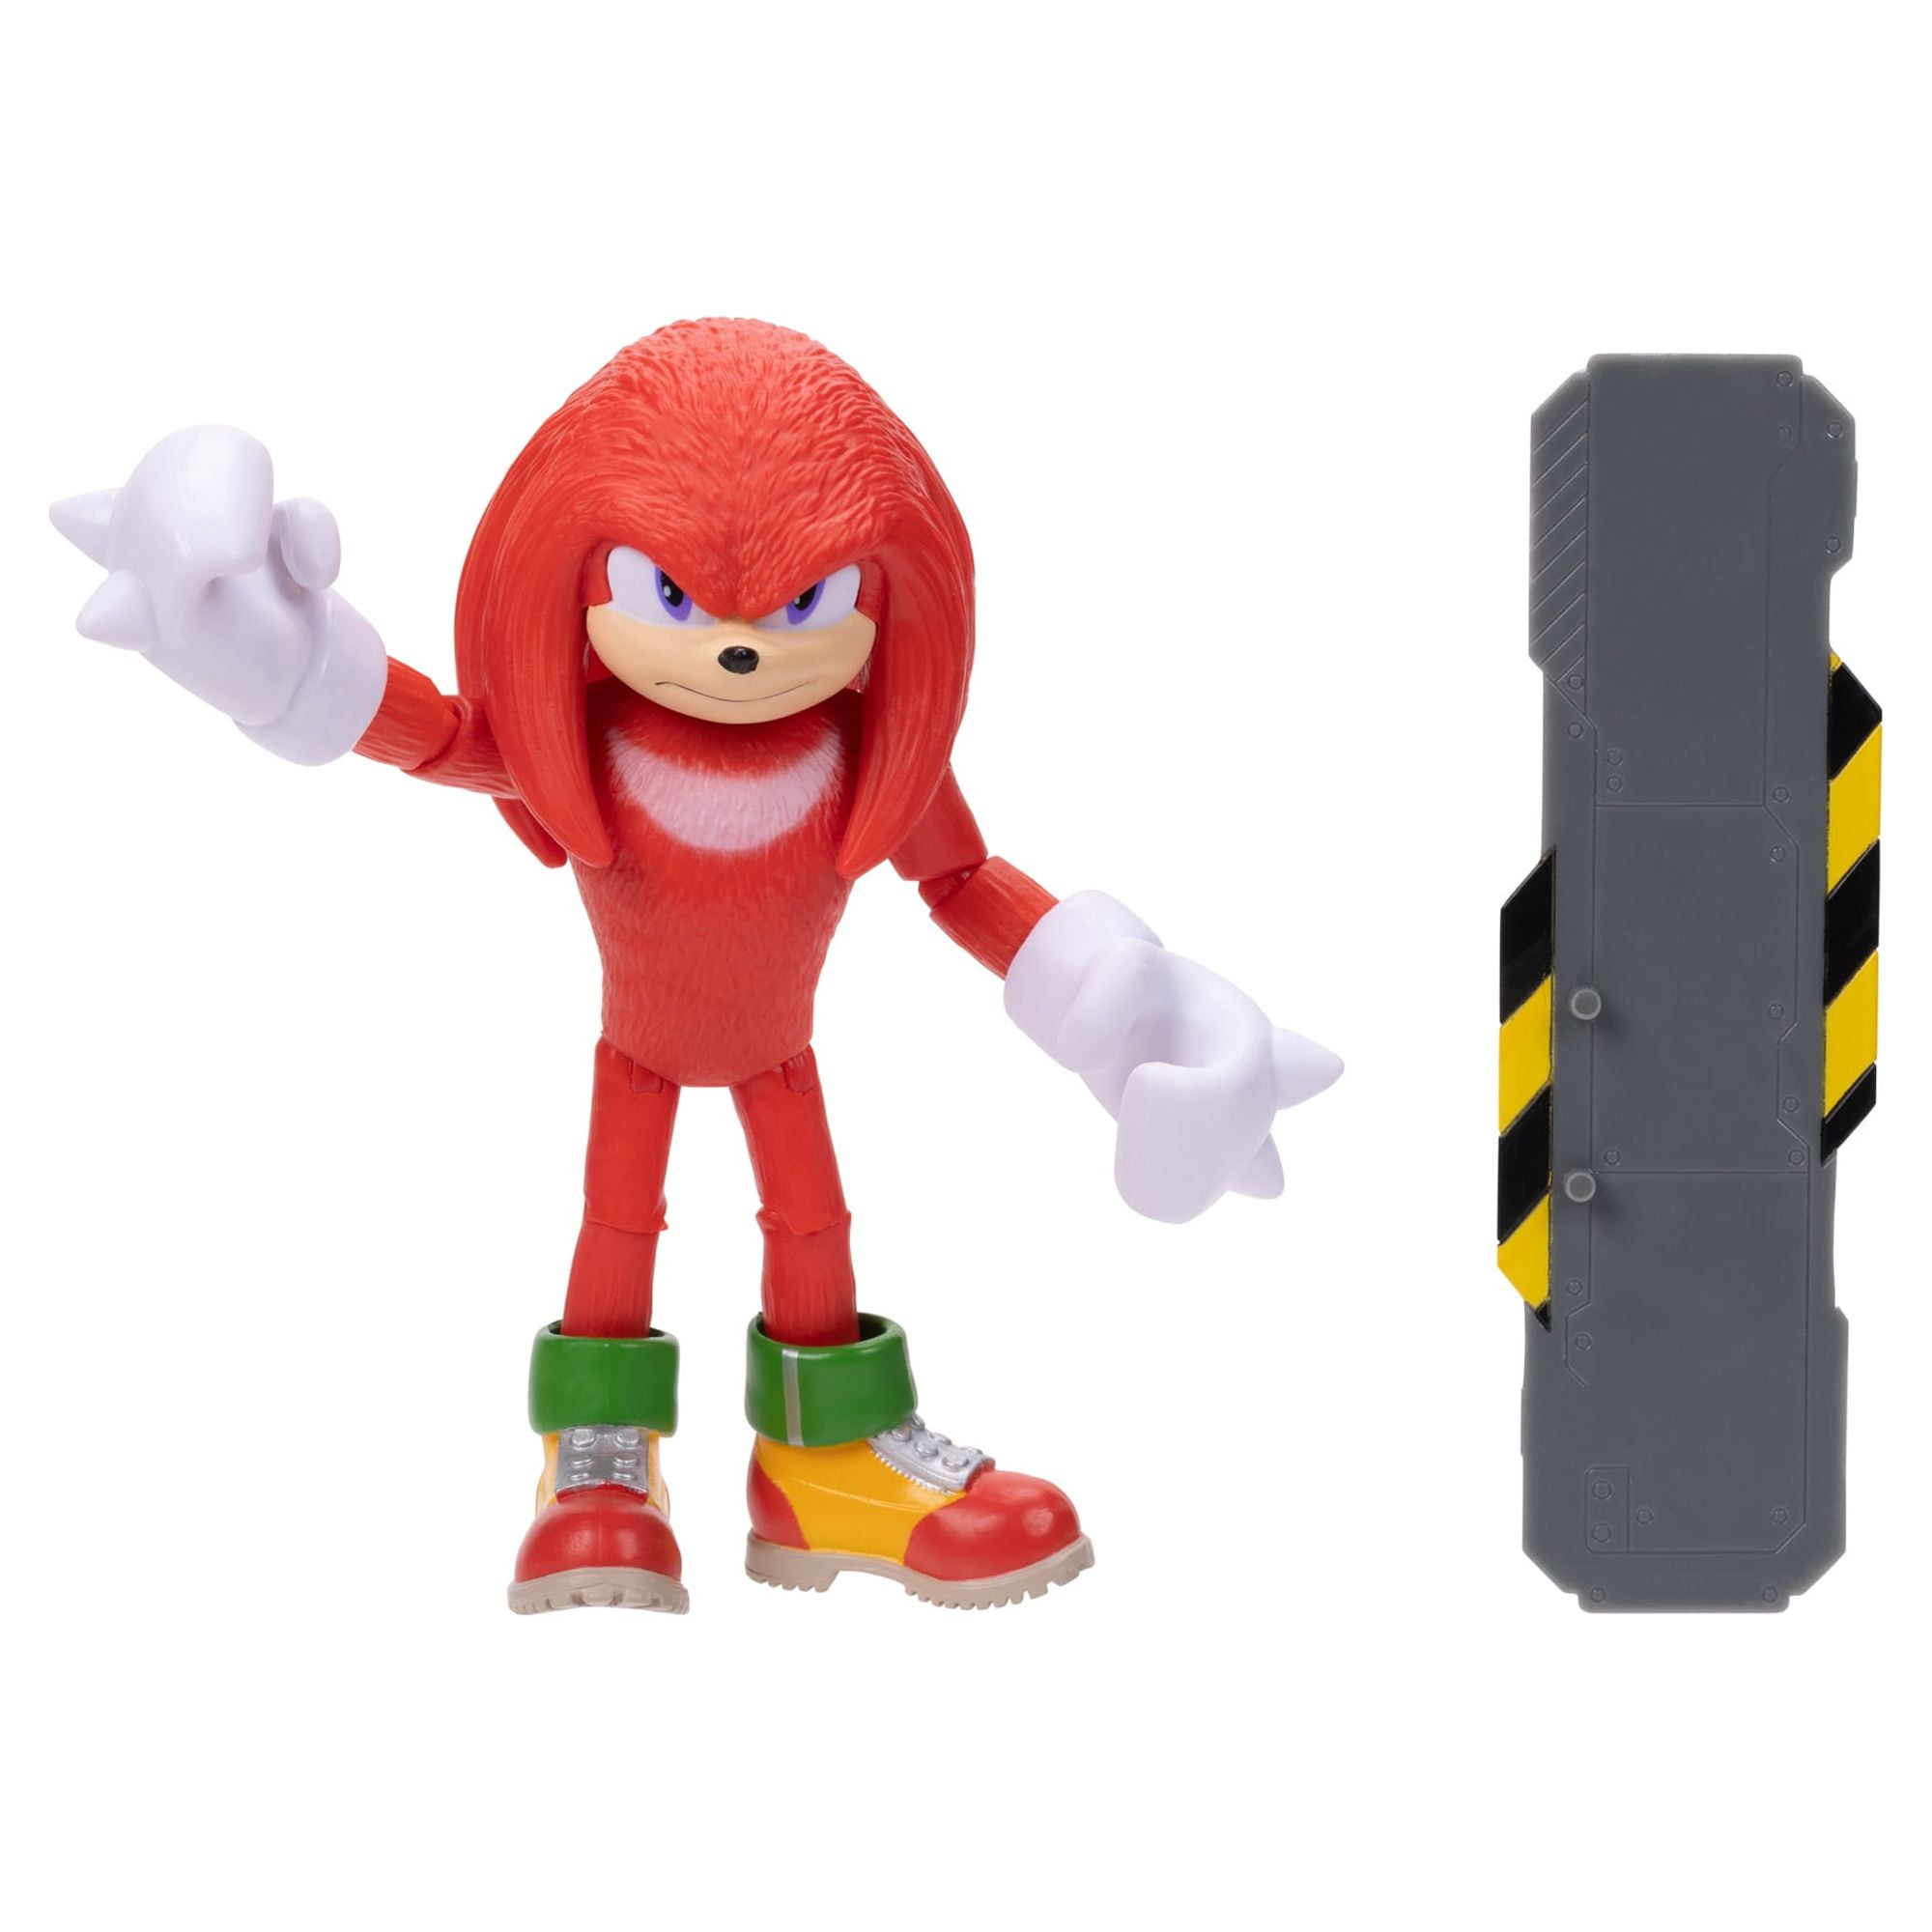 Boneco Colecionável Action Figure Knuckles: Sonic The Hedgehog